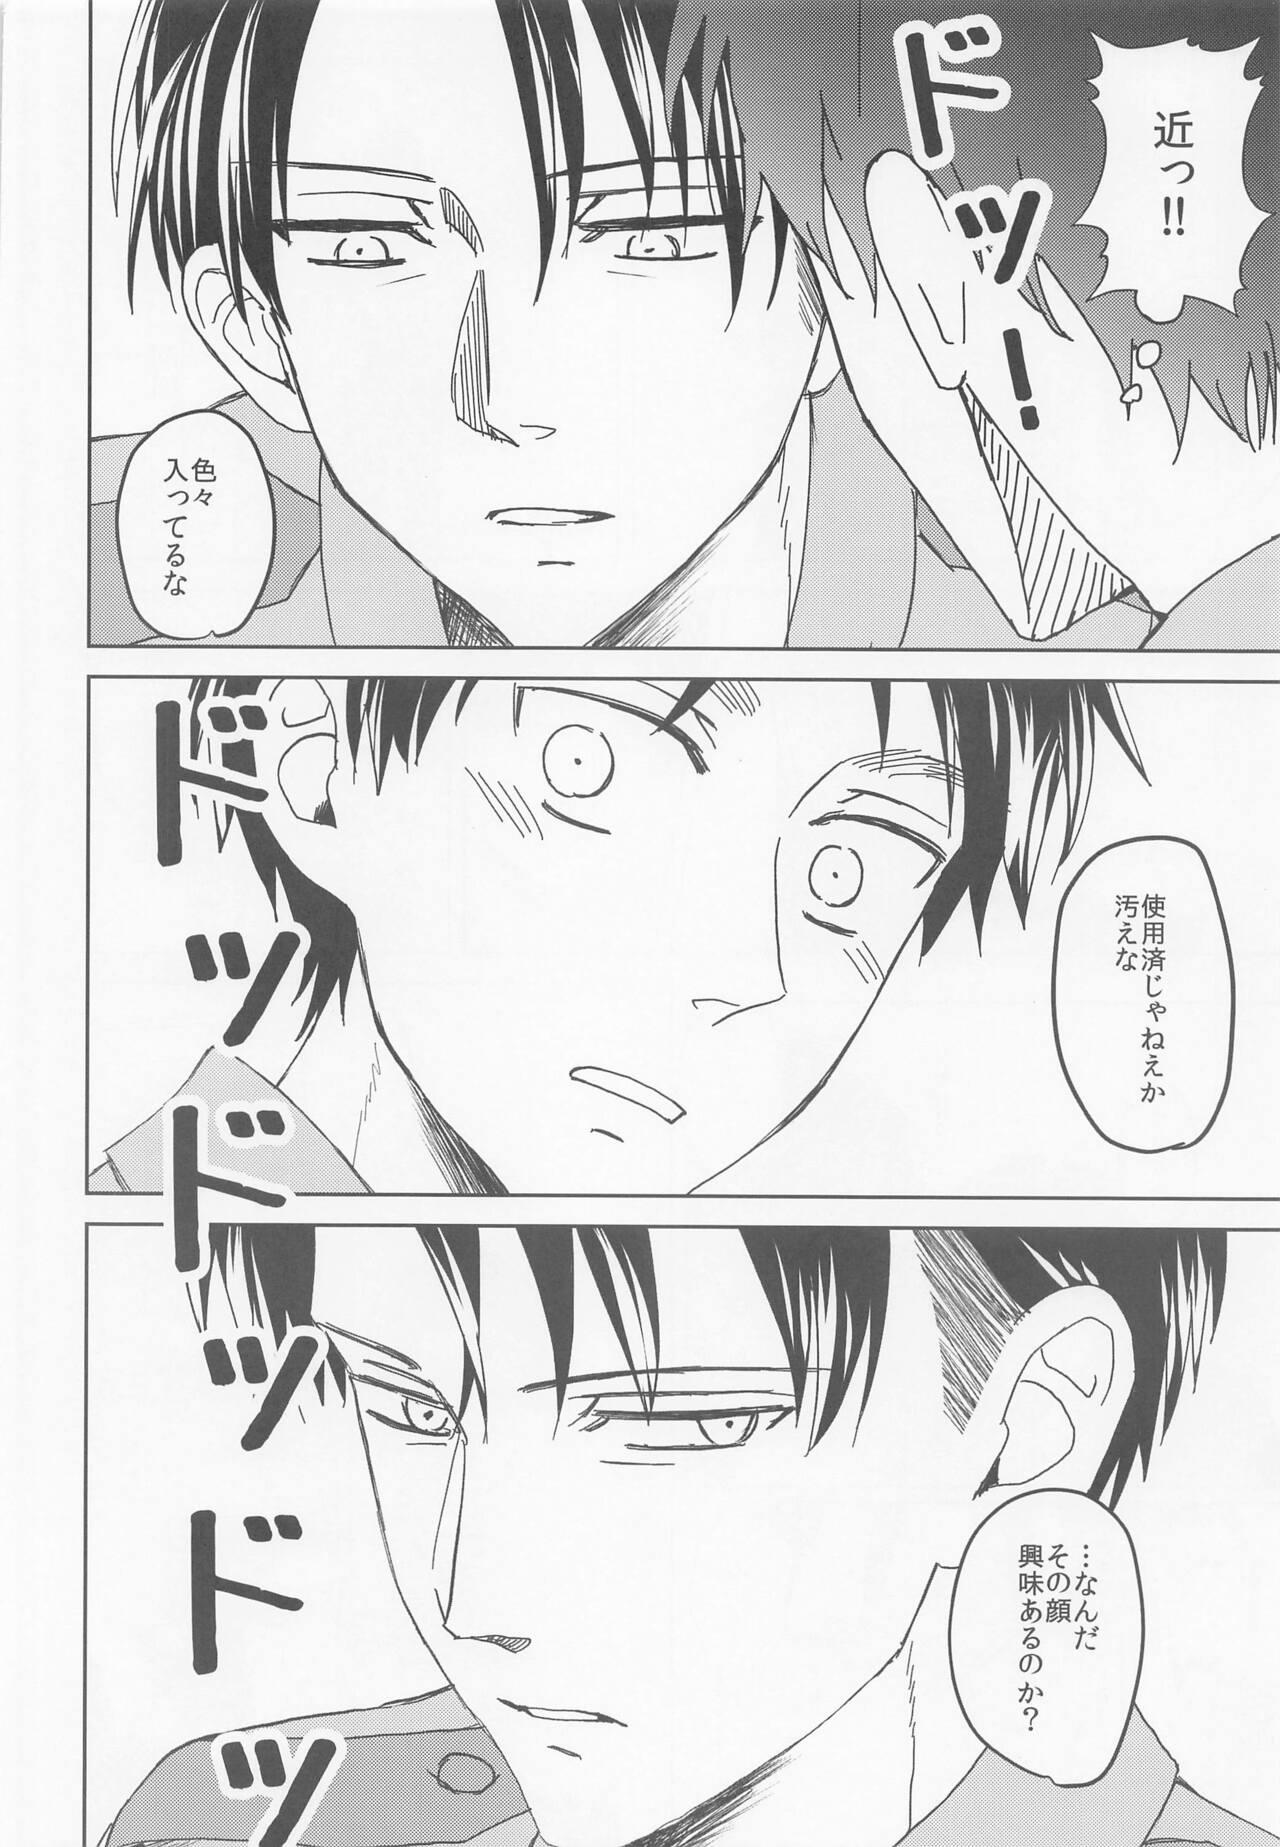 Men kininarusempaikeisatsukan - Shingeki no kyojin | attack on titan Fantasy Massage - Page 11